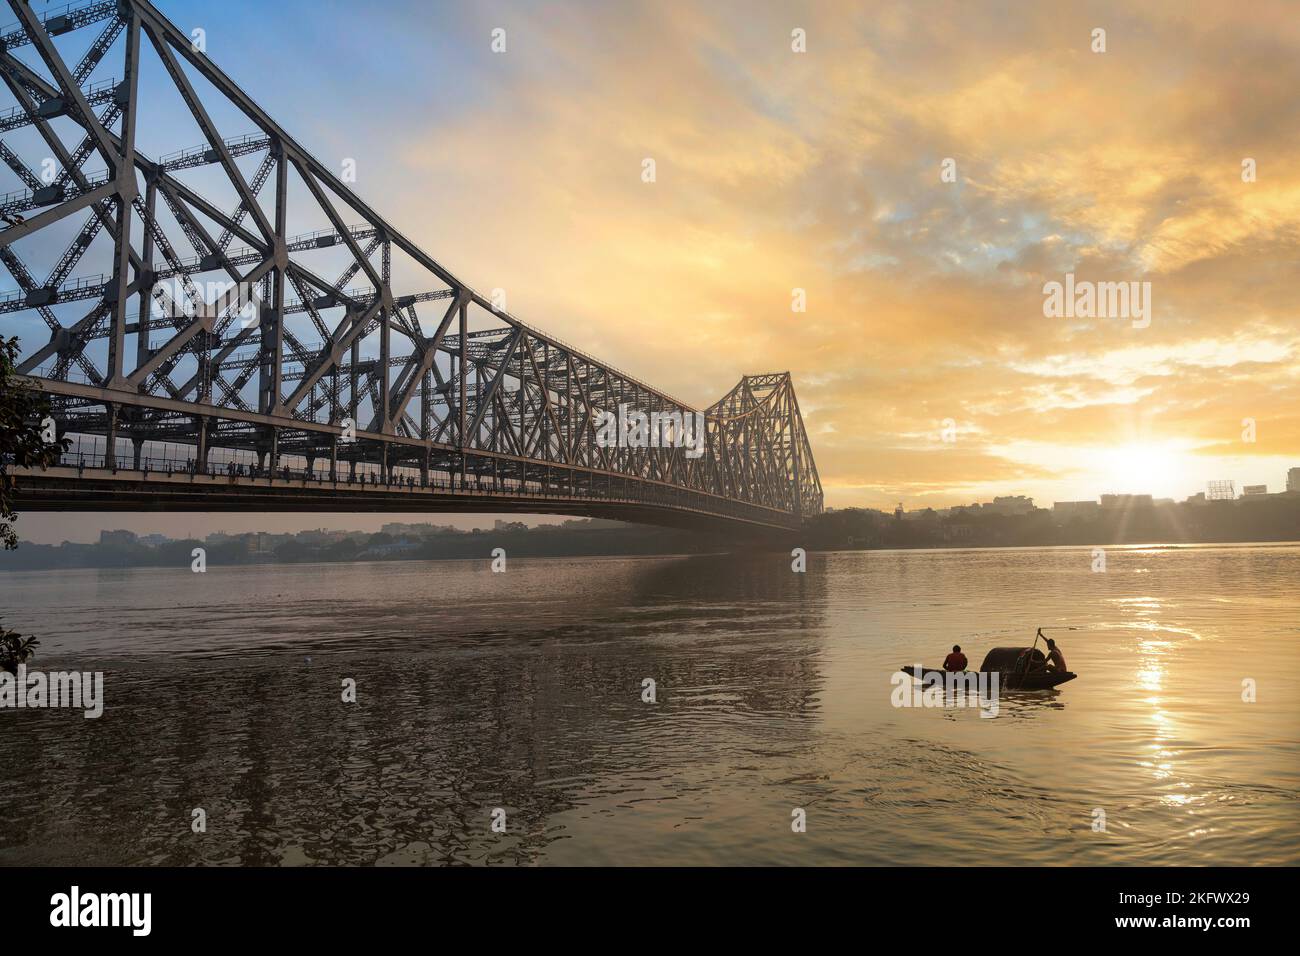 Pont Howrah au lever du soleil. Un célèbre pont en porte-à-faux construit sur la rivière Ganges qui relie la ville de Kolkata au quartier de Howrah. Banque D'Images